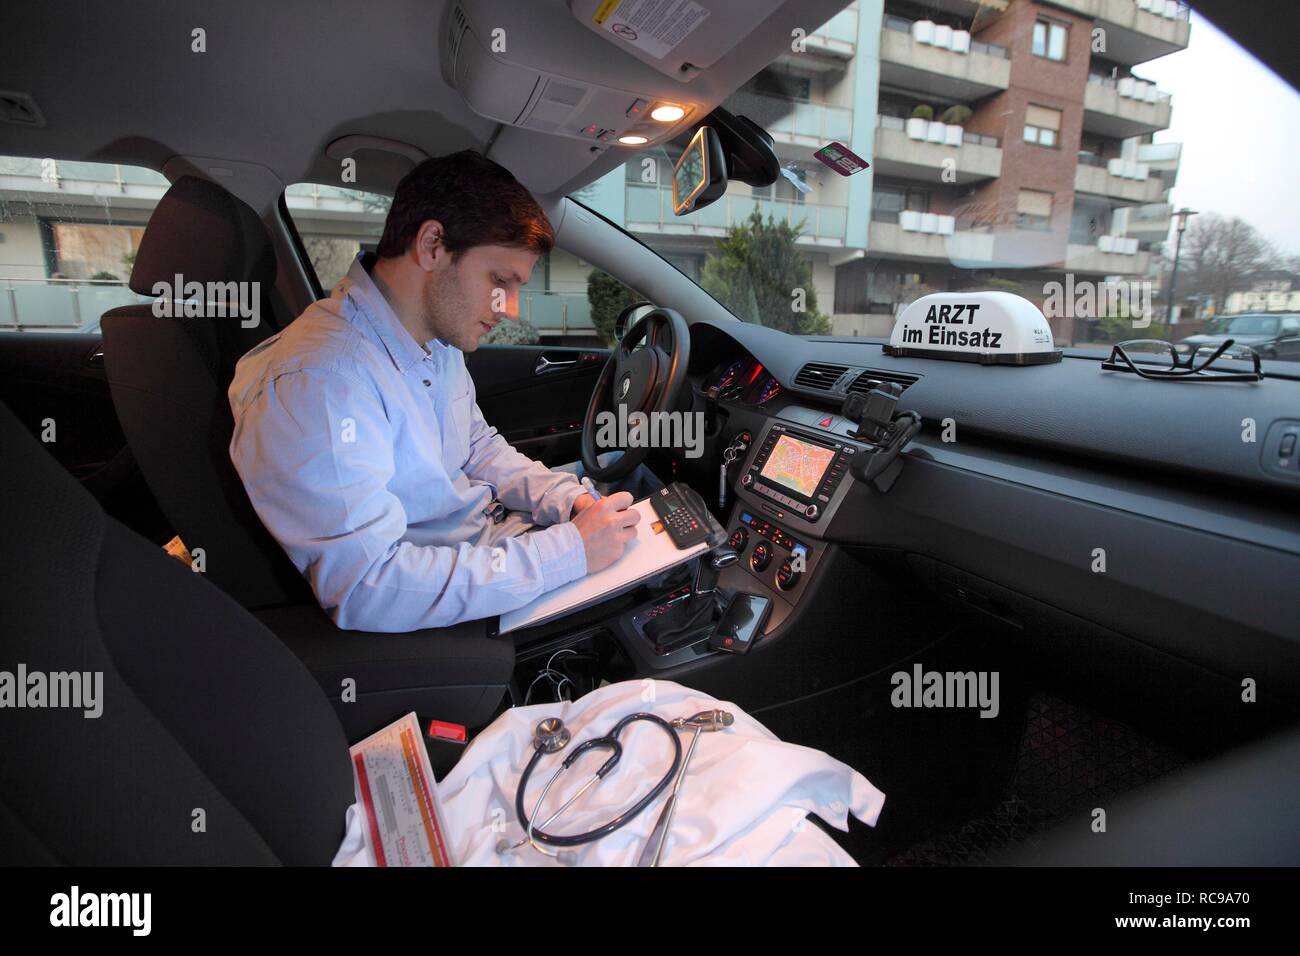 Giovani GP, medico di medicina generale prendendo appunti nella sua auto dopo una visita a casa, auto visualizzando il segno "Arzt im Einsatz" Foto Stock